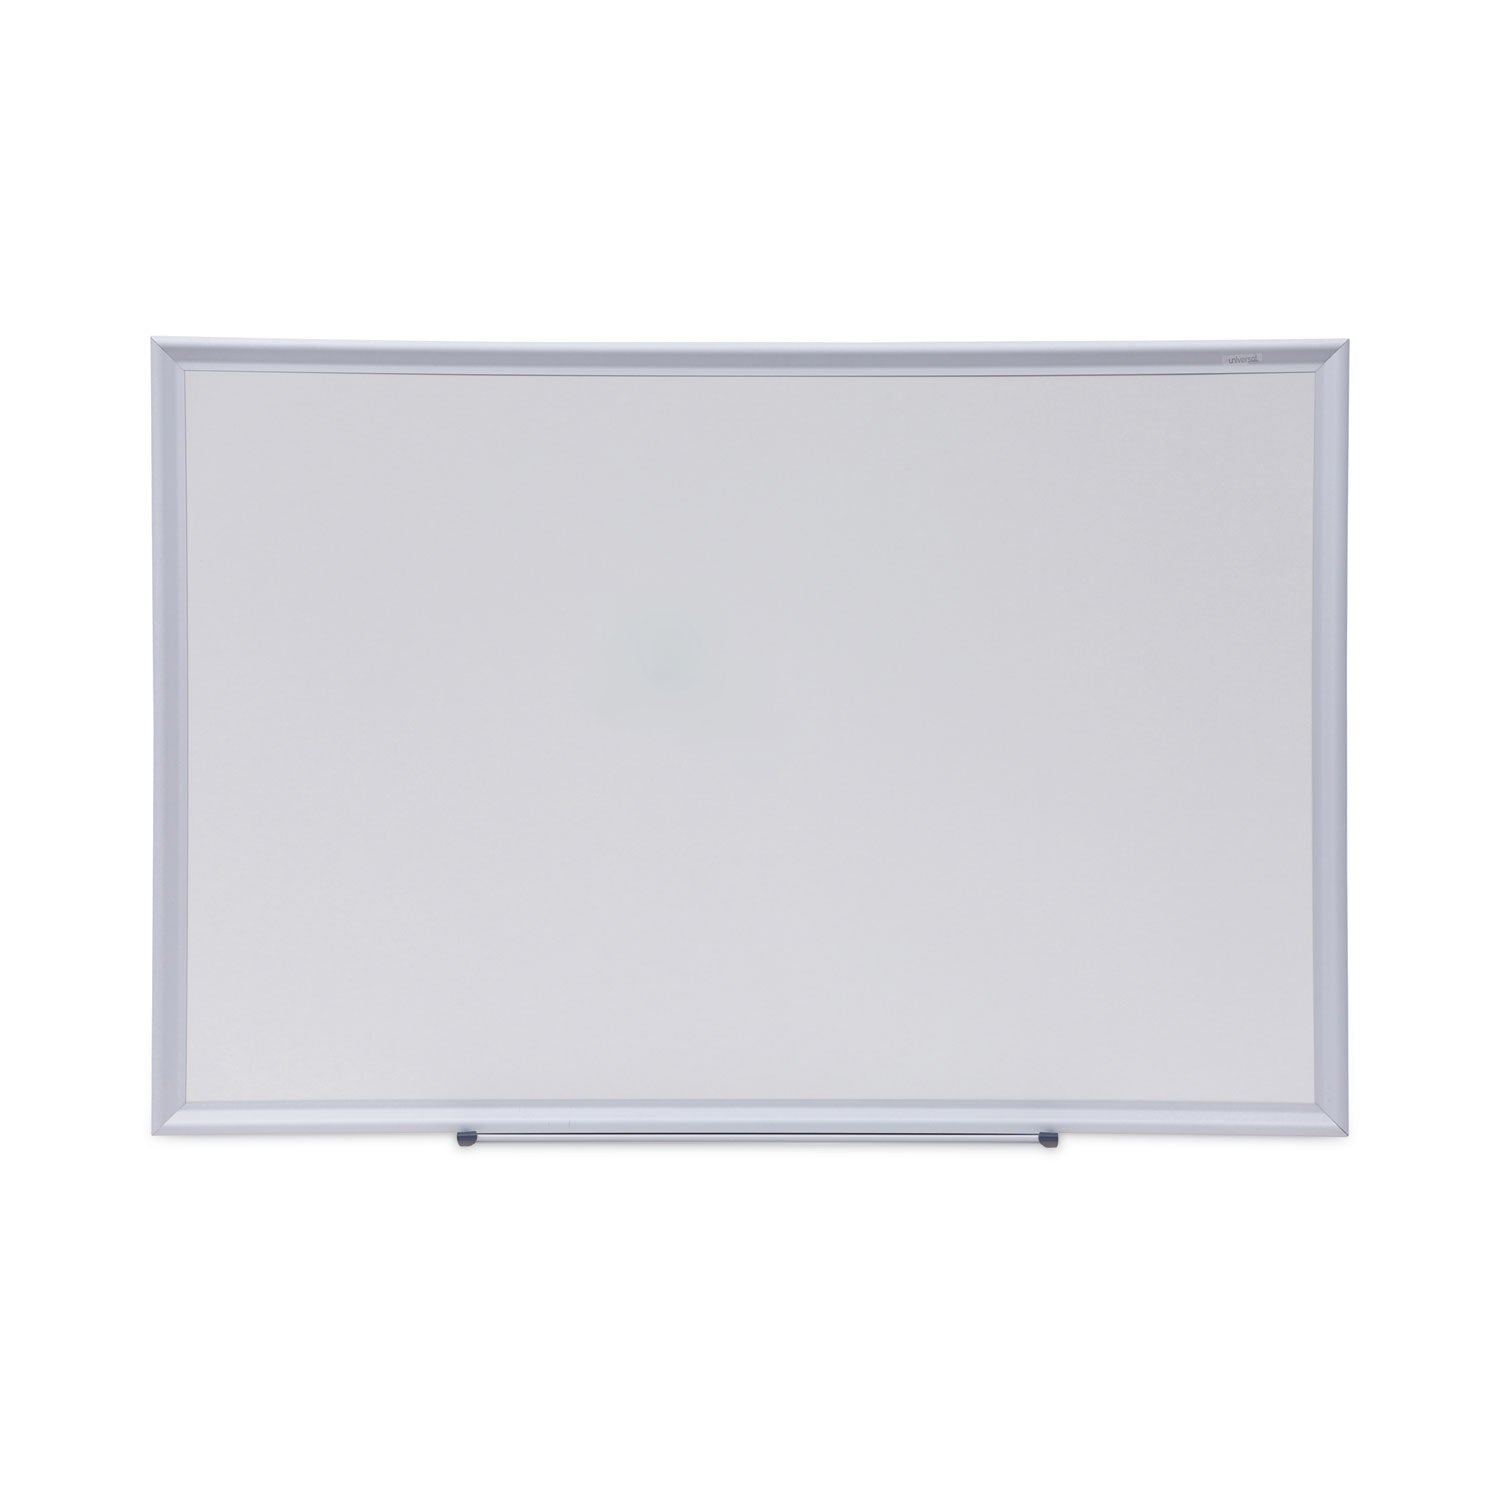 Deluxe Melamine Dry Erase Board, 36 x 24, Melamine White Surface, Silver Aluminum Frame - 